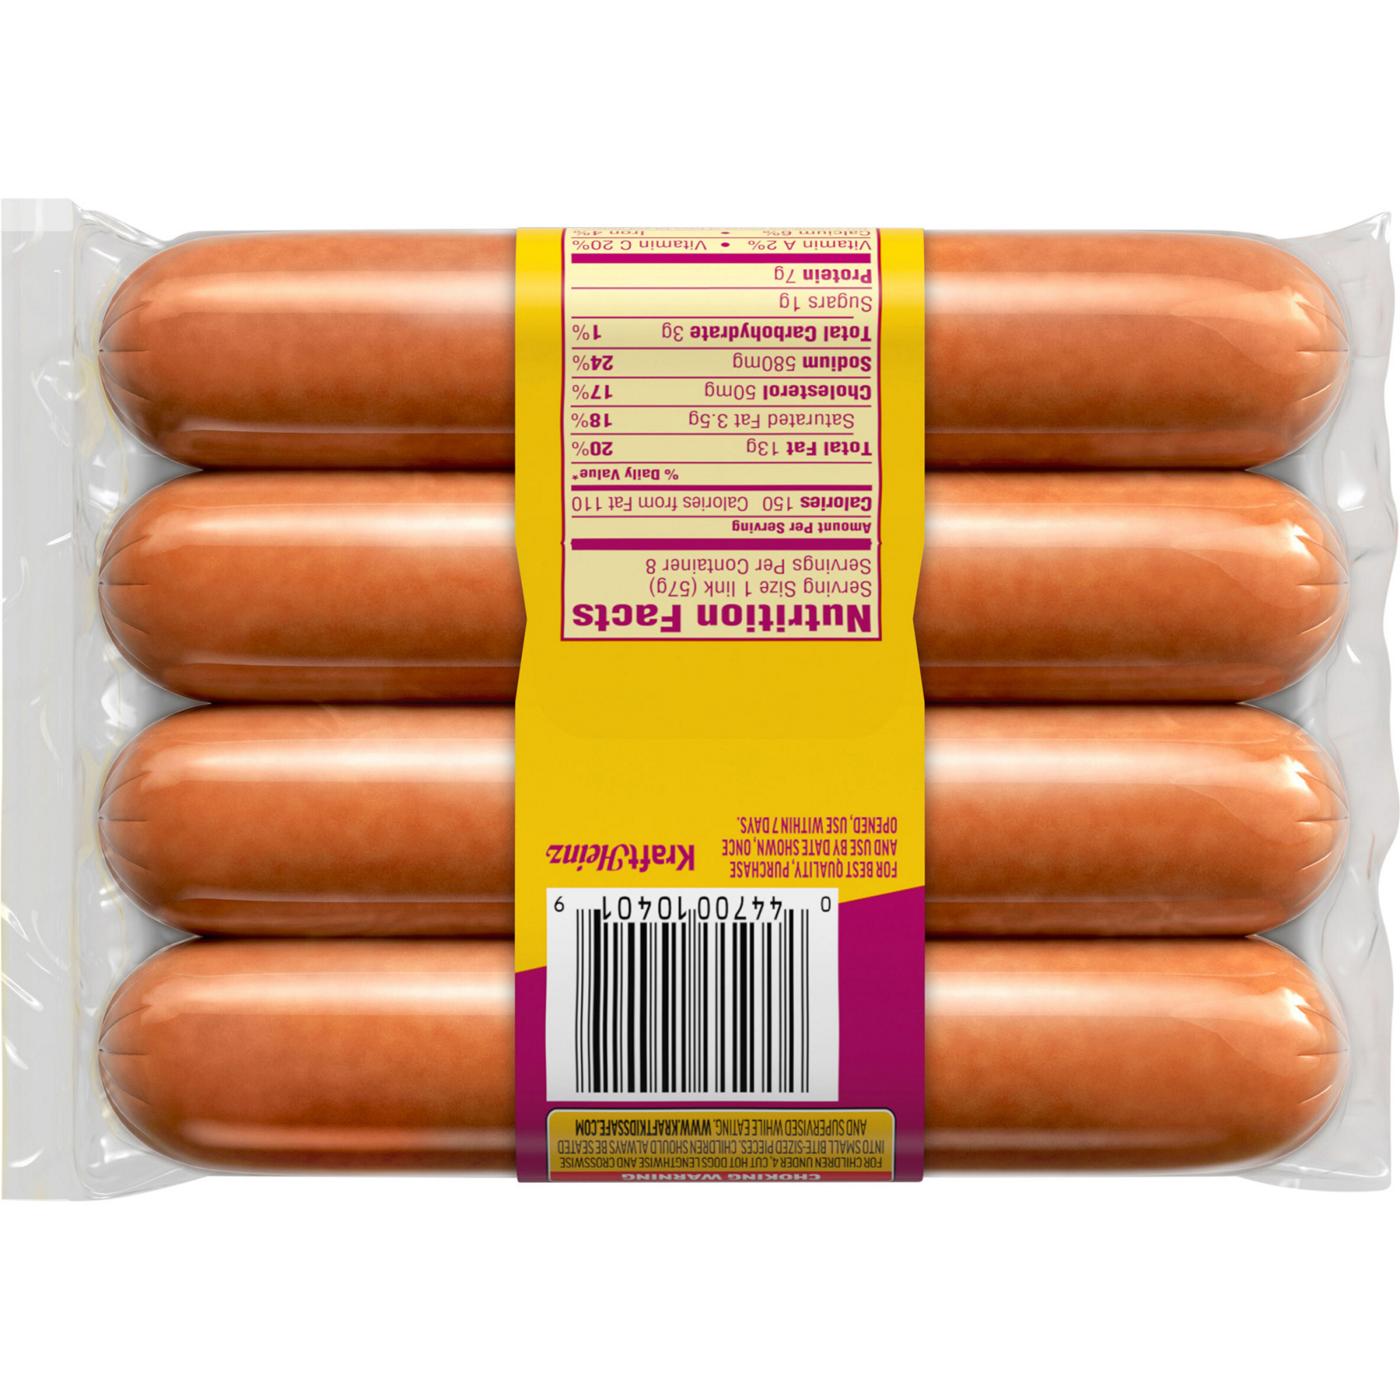 Oscar Mayer Chili Cheese Stuffed Hot Dogs; image 3 of 3